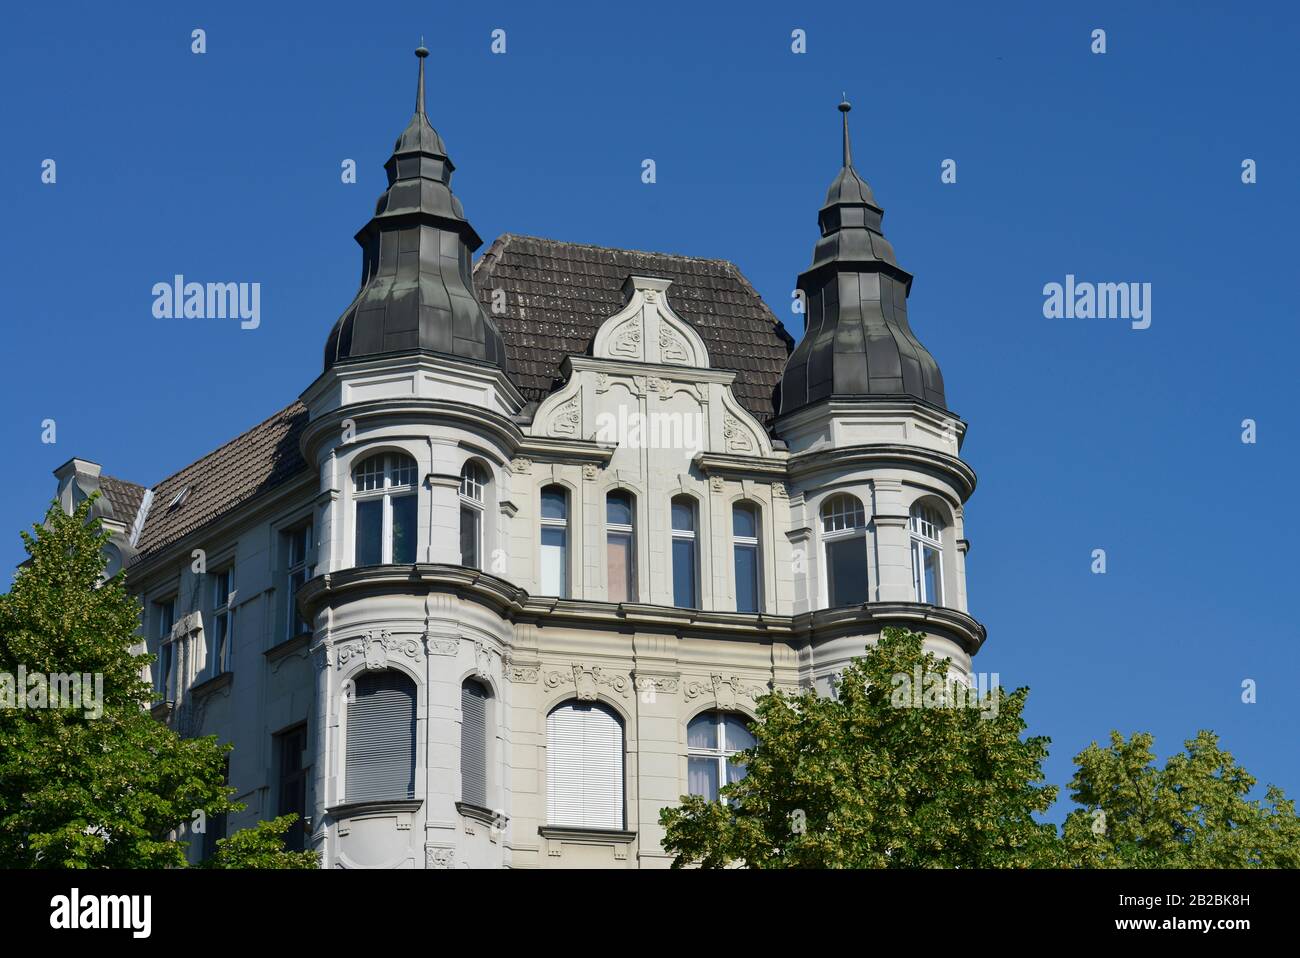 Altbau, Uhlandstrasse, Wilmersdorf, Berlin, Deutschland Stock Photo